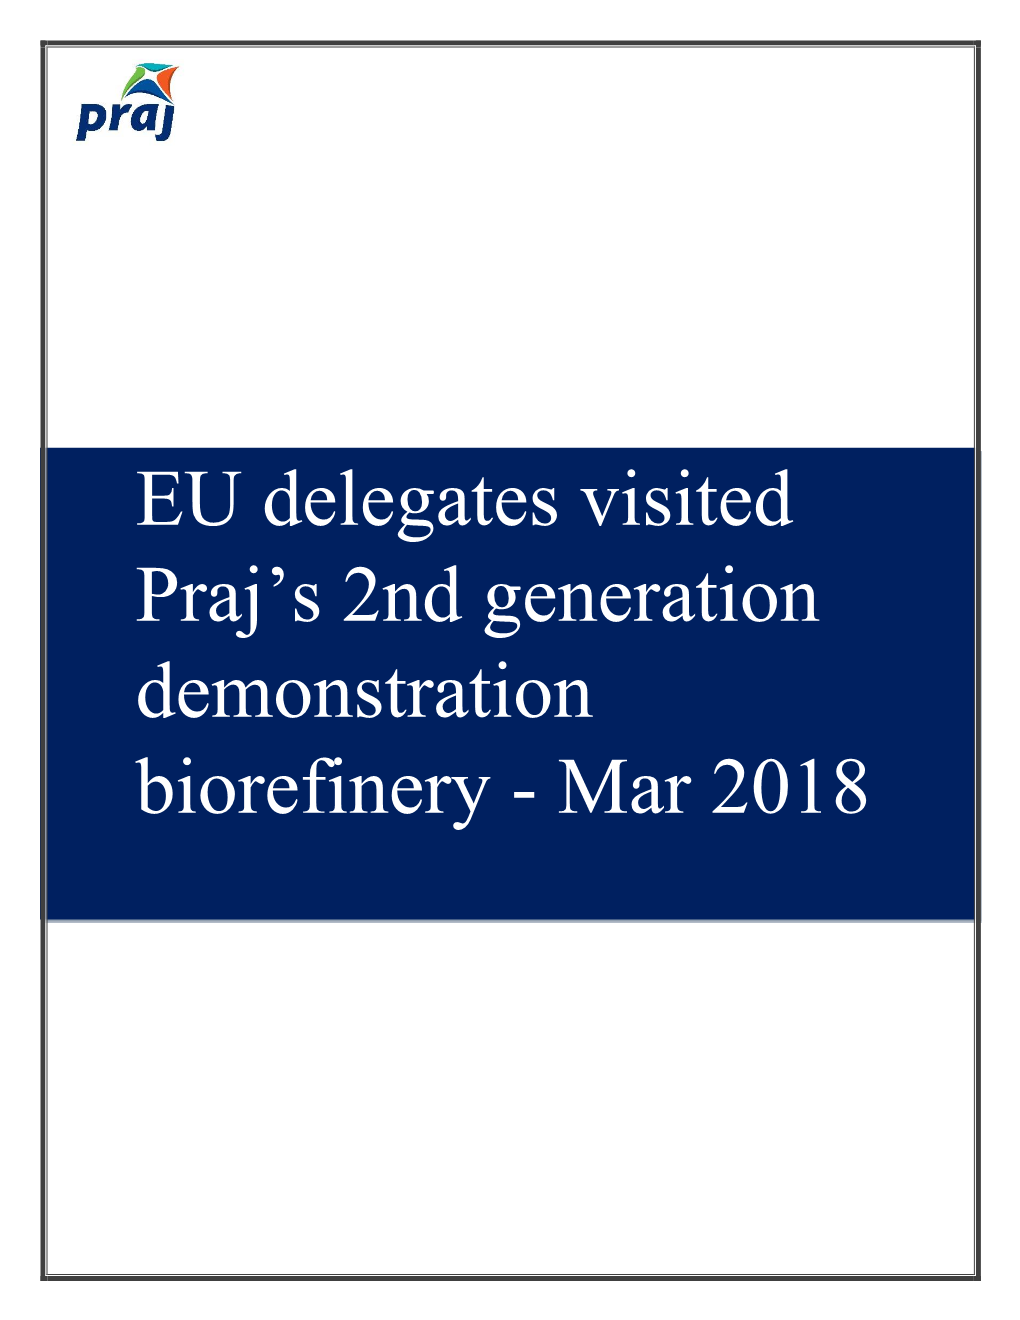 EU Delegates Visited Praj's 2Nd Generation Demonstration Biorefinery